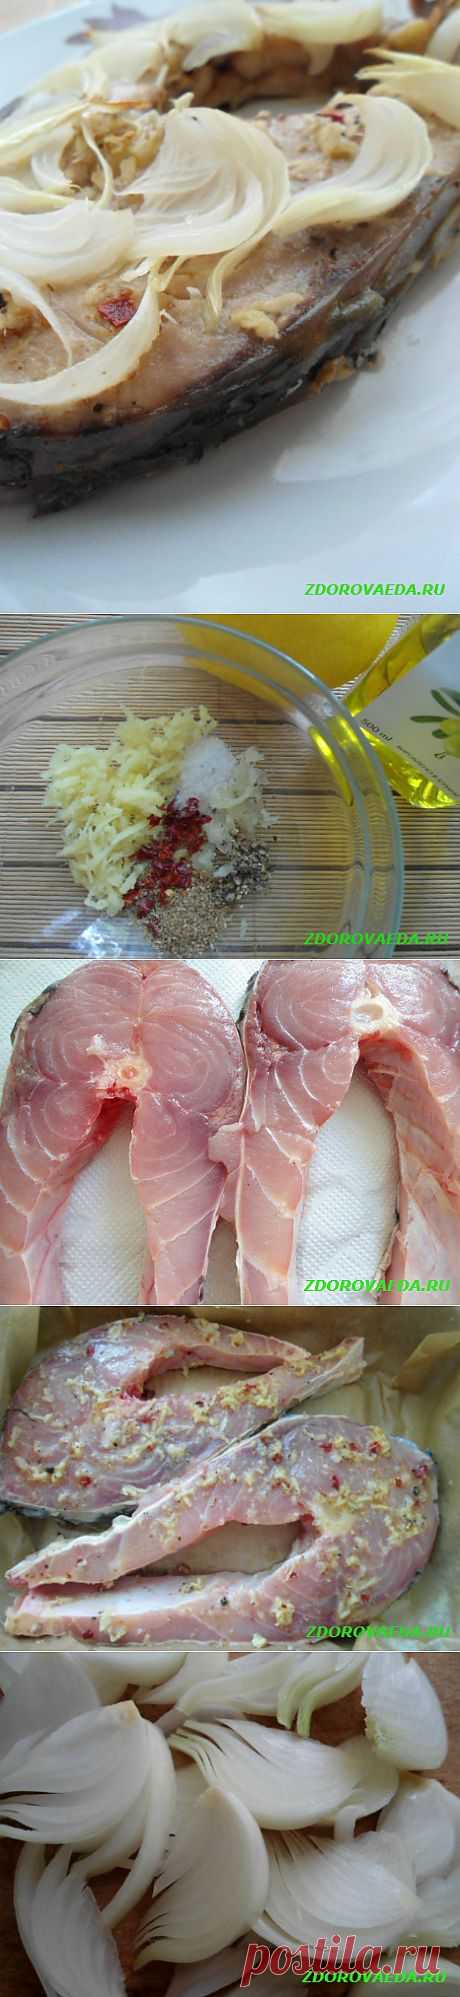 Рыбный стейк с луком, имбирем и горьким перцем в духовке